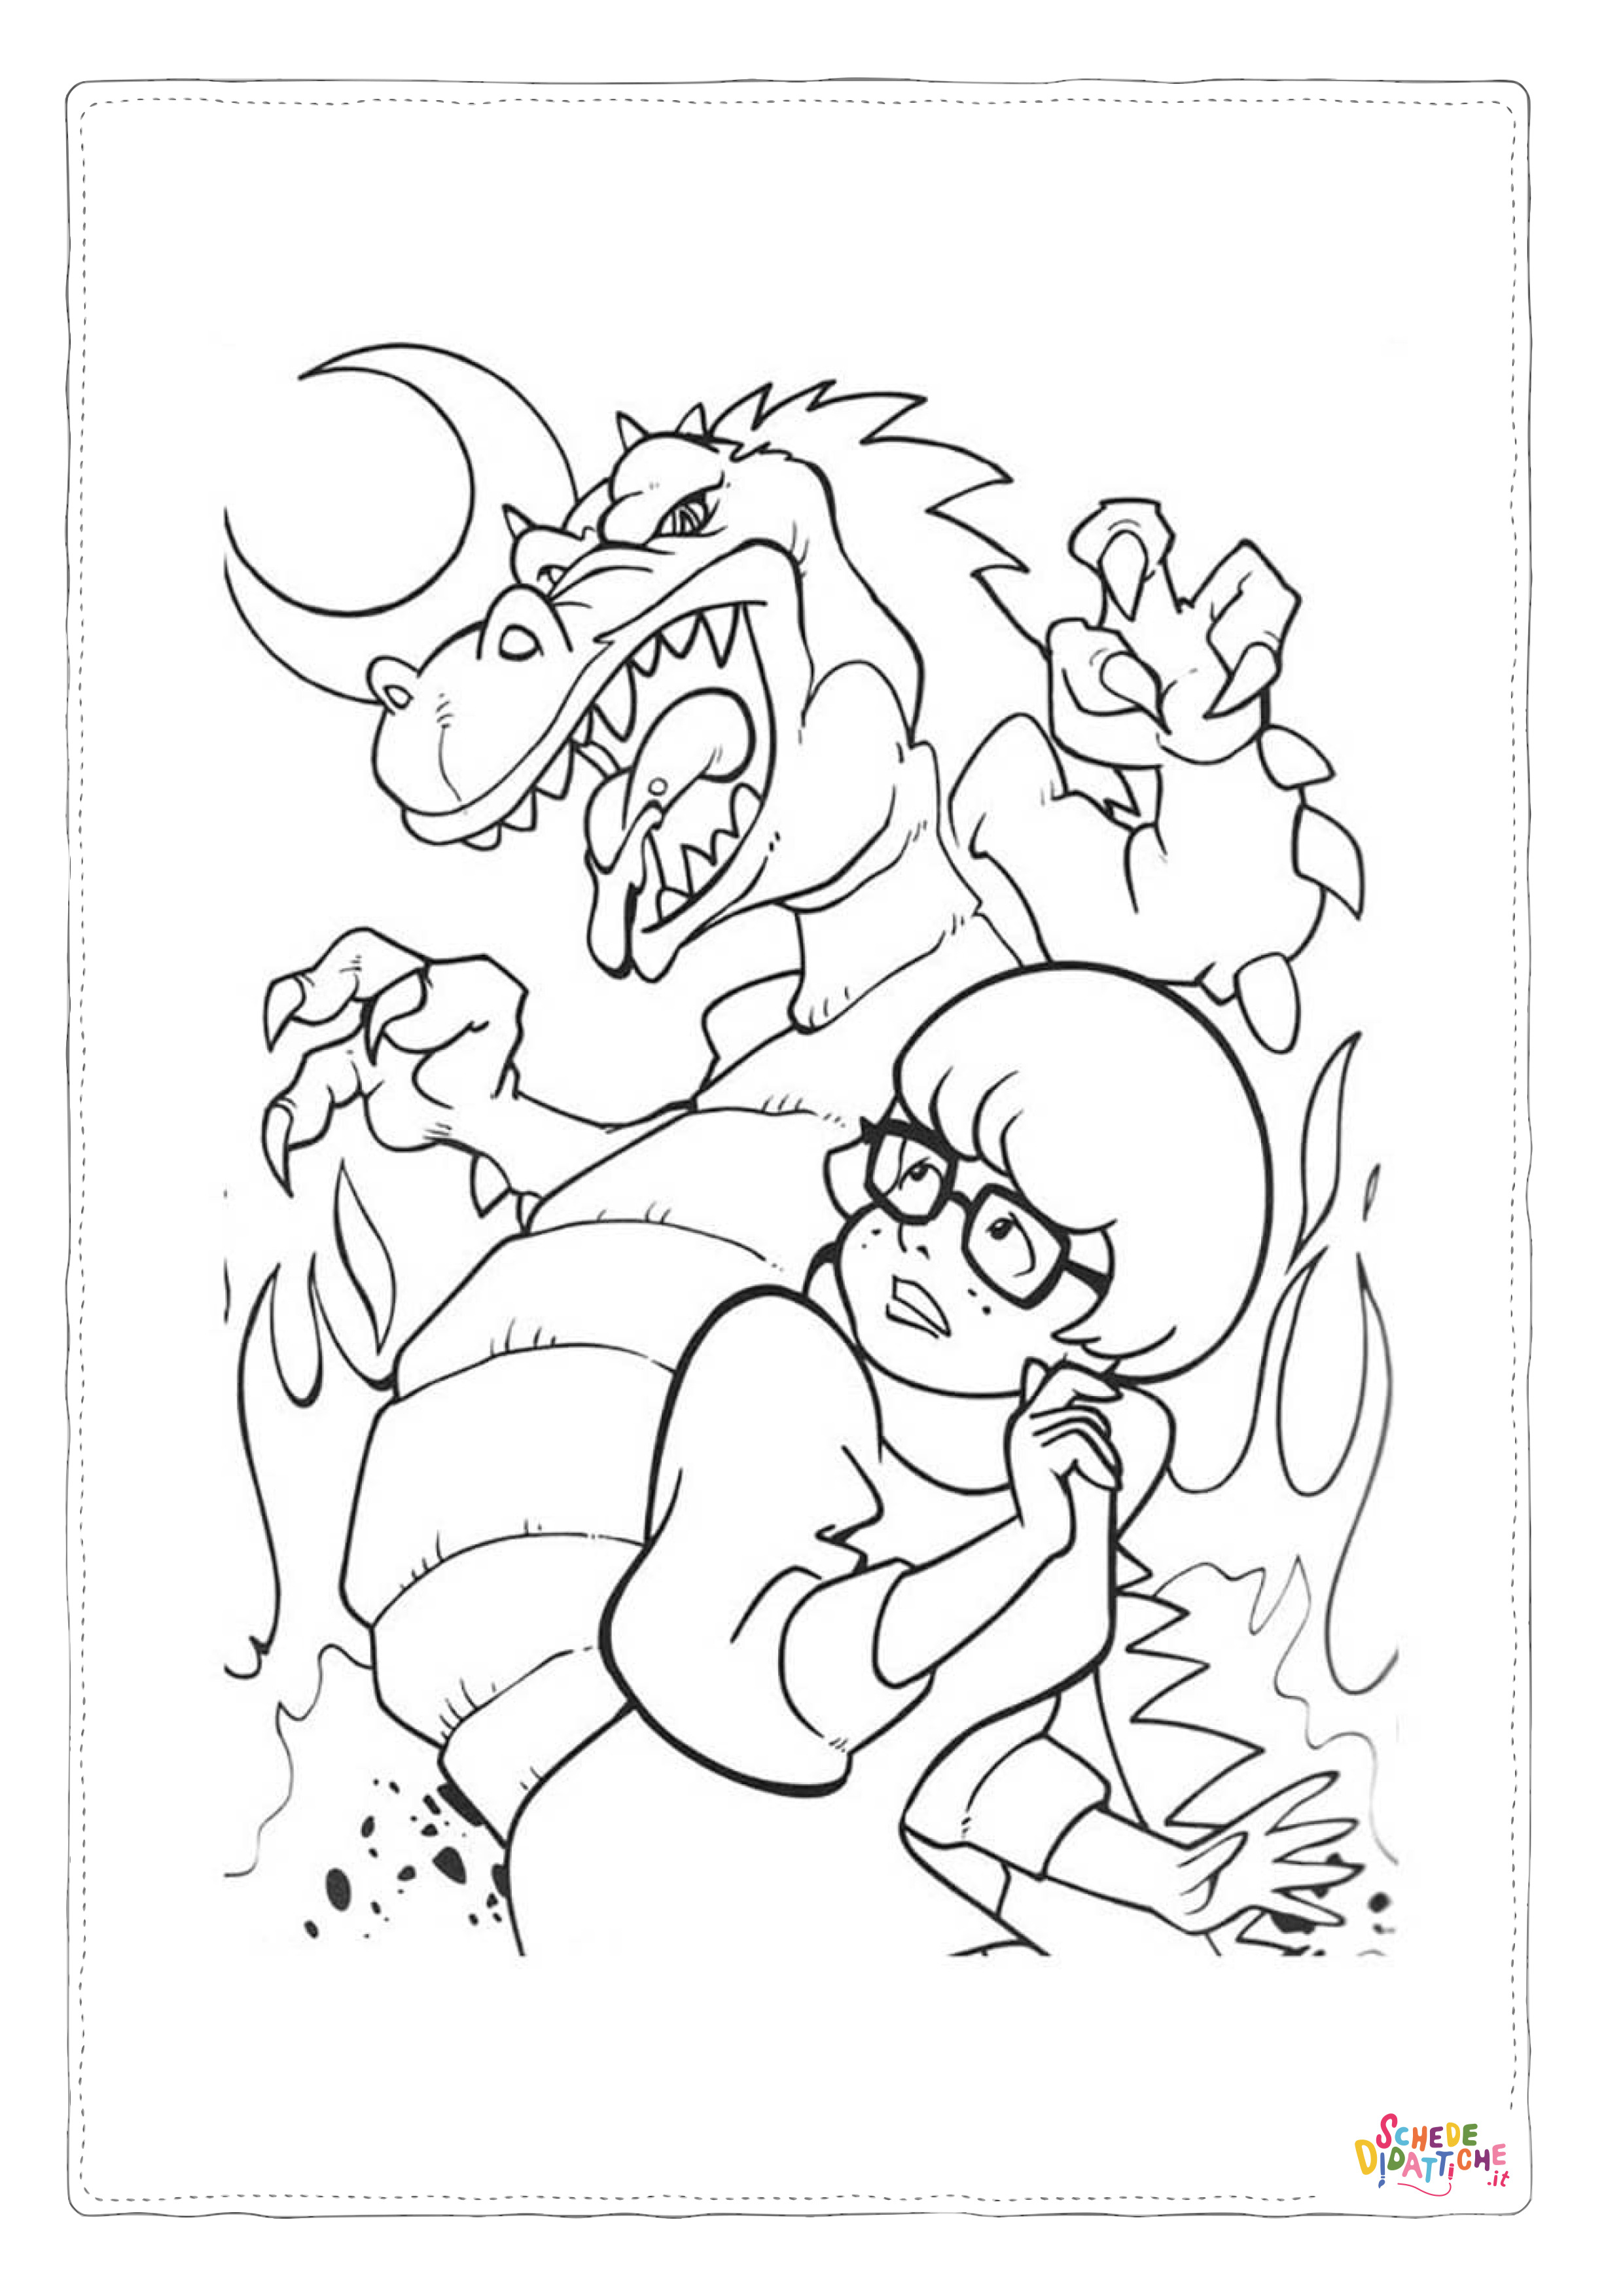 Disegno di Scooby Doo da stampare e colorare 136